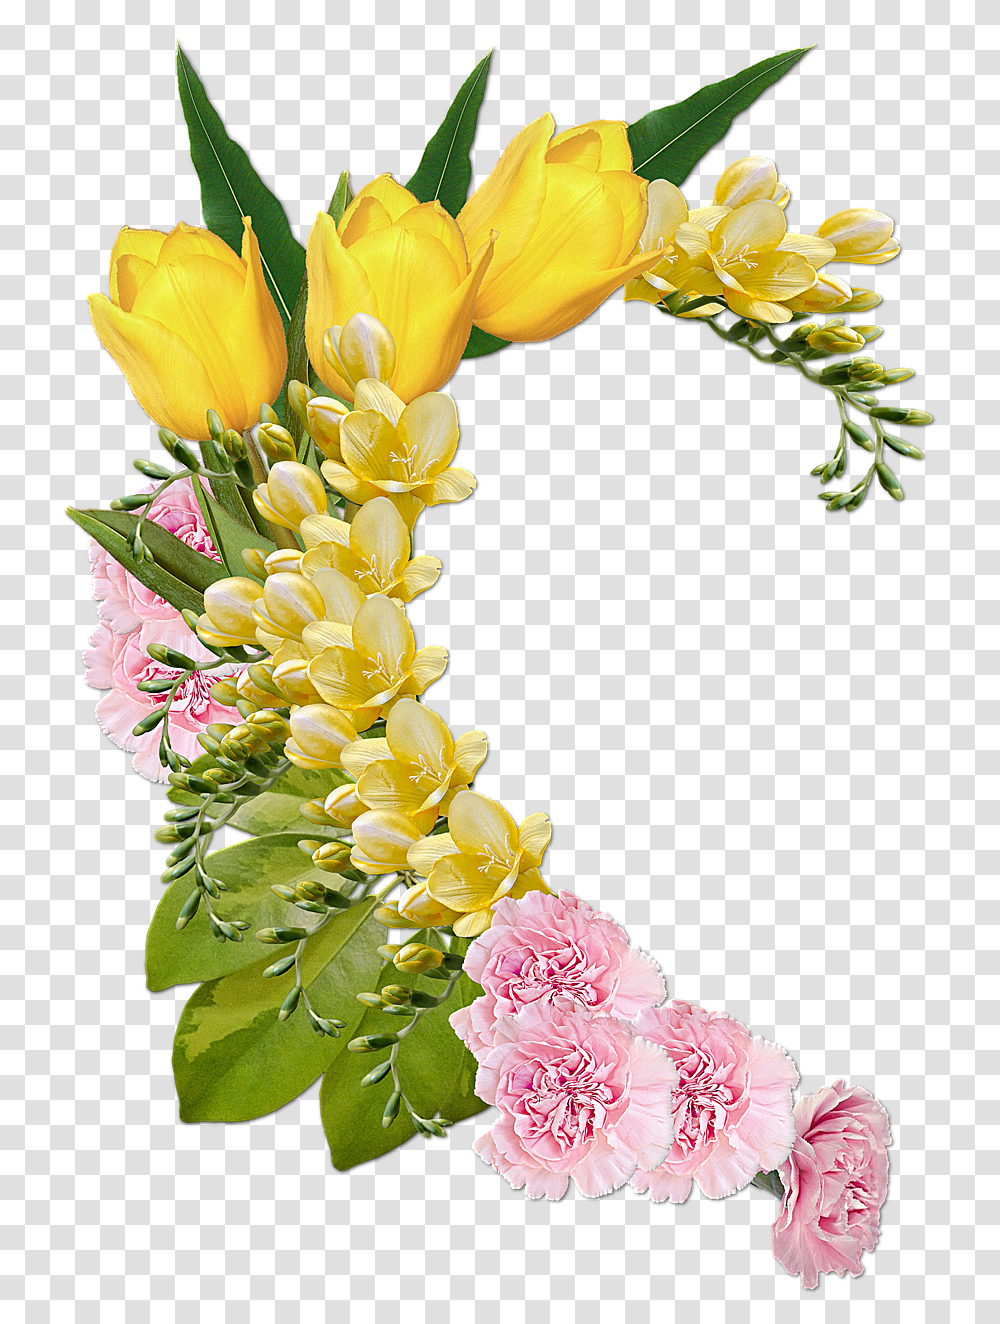 Flower Status Bangla, Plant, Blossom, Flower Bouquet, Flower Arrangement Transparent Png